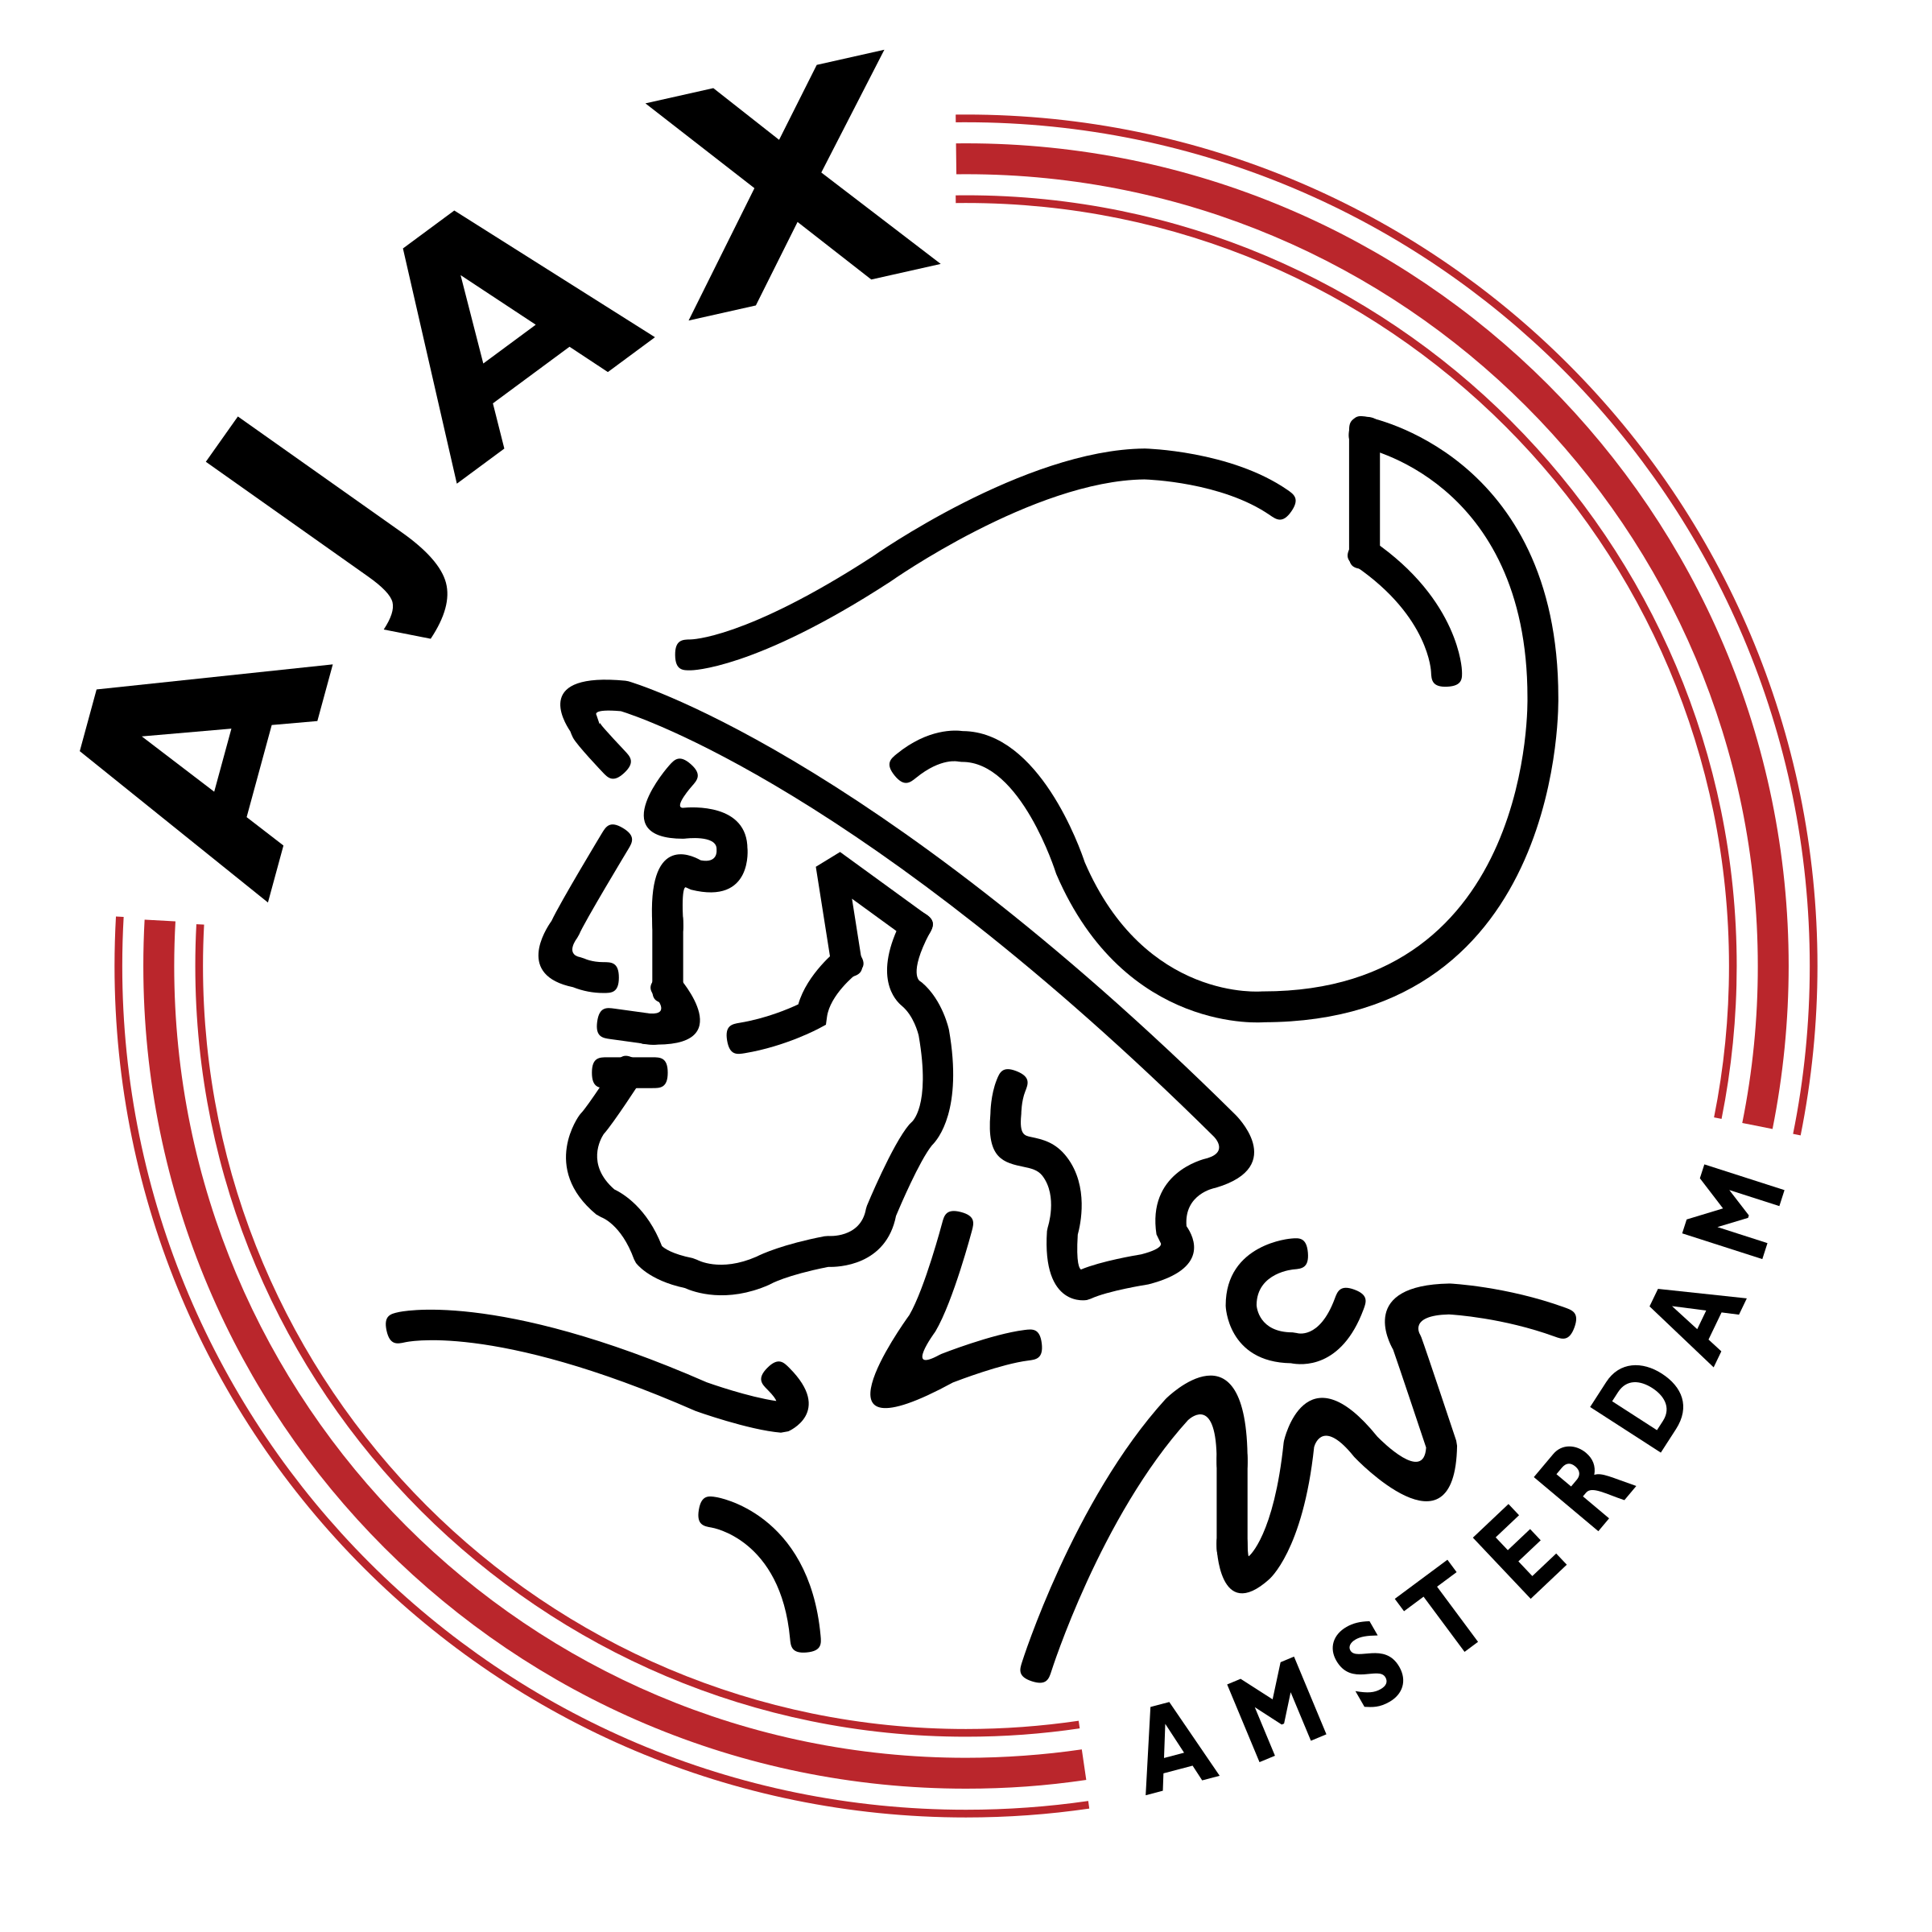 Download PNG image - Ajax Logo Transparent Background 